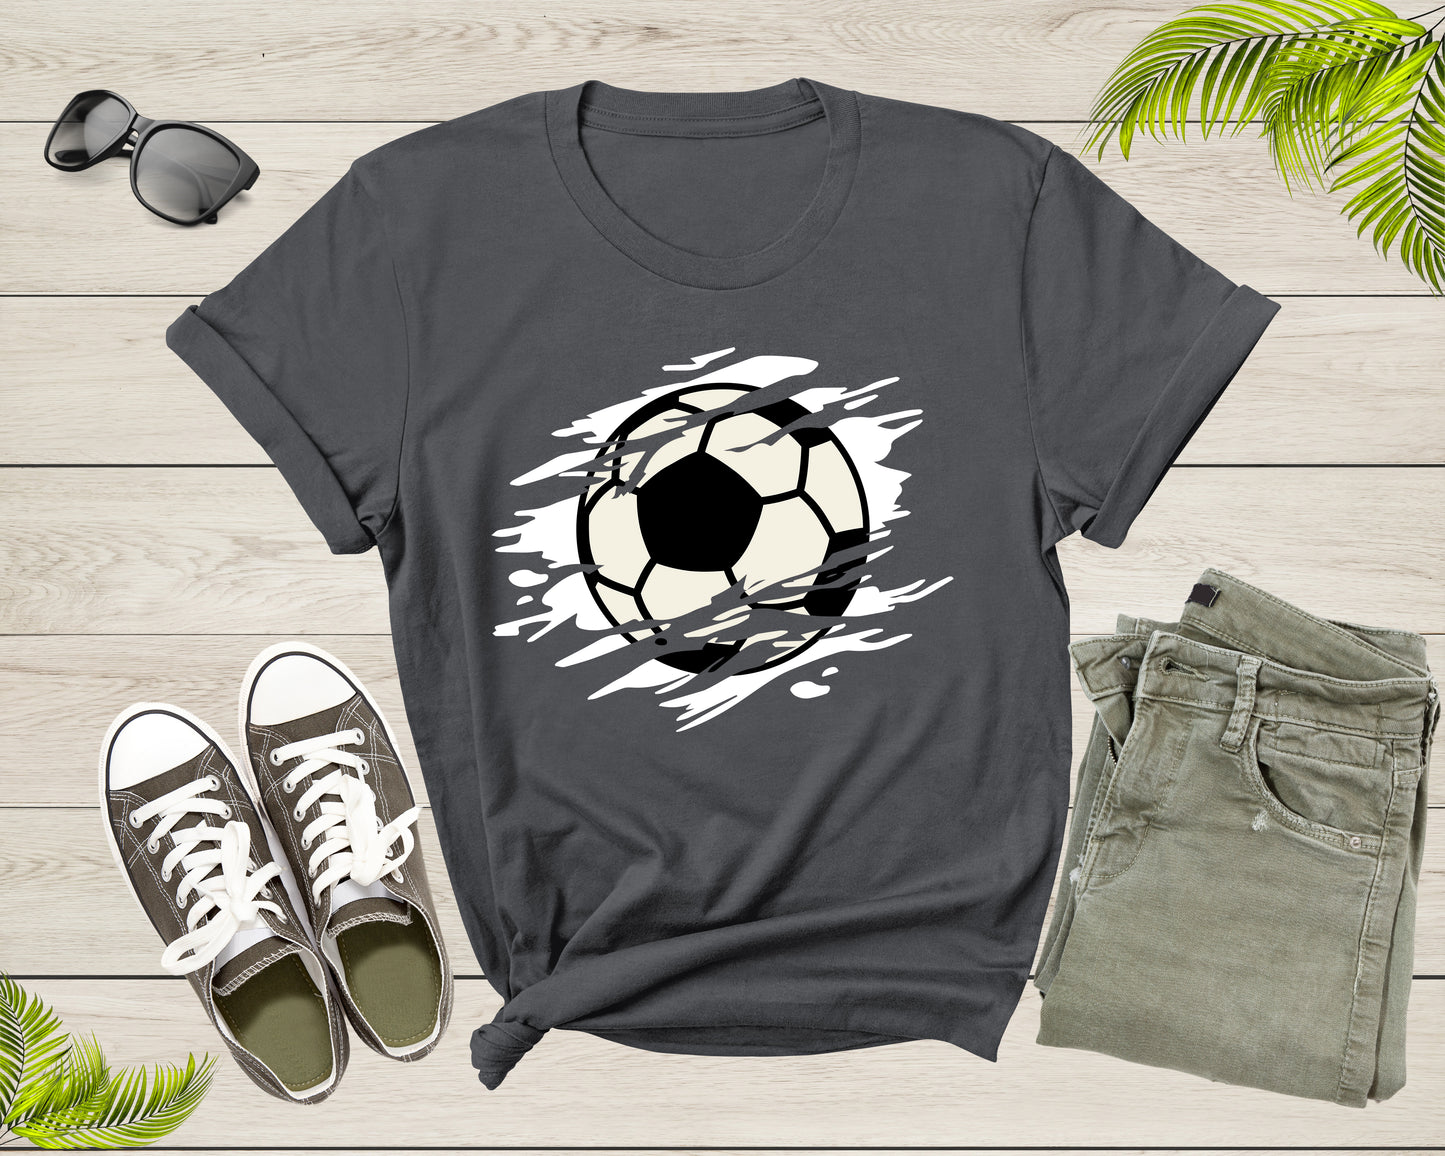 Cool Soccer Ball Silhouette Soccer Sports Team Games T-Shirt Soccer Player Gift T Shirt for Men Women Kids Boys Girls Soccer Graphic Tshirt